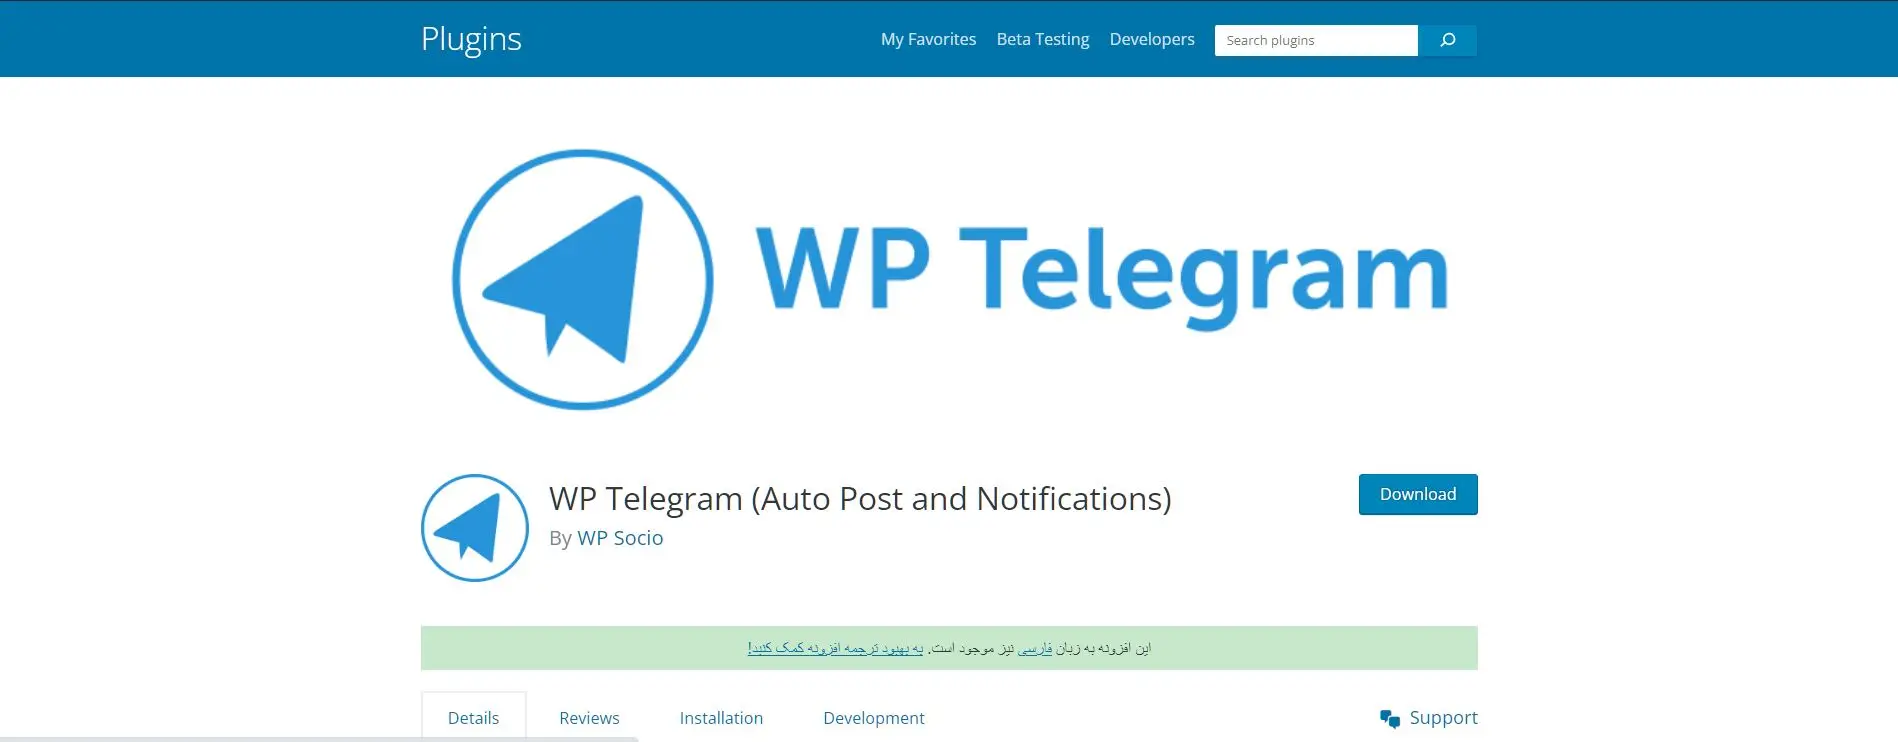 ارسال خودکار مطالب سایت به تلگرام با wp telegram